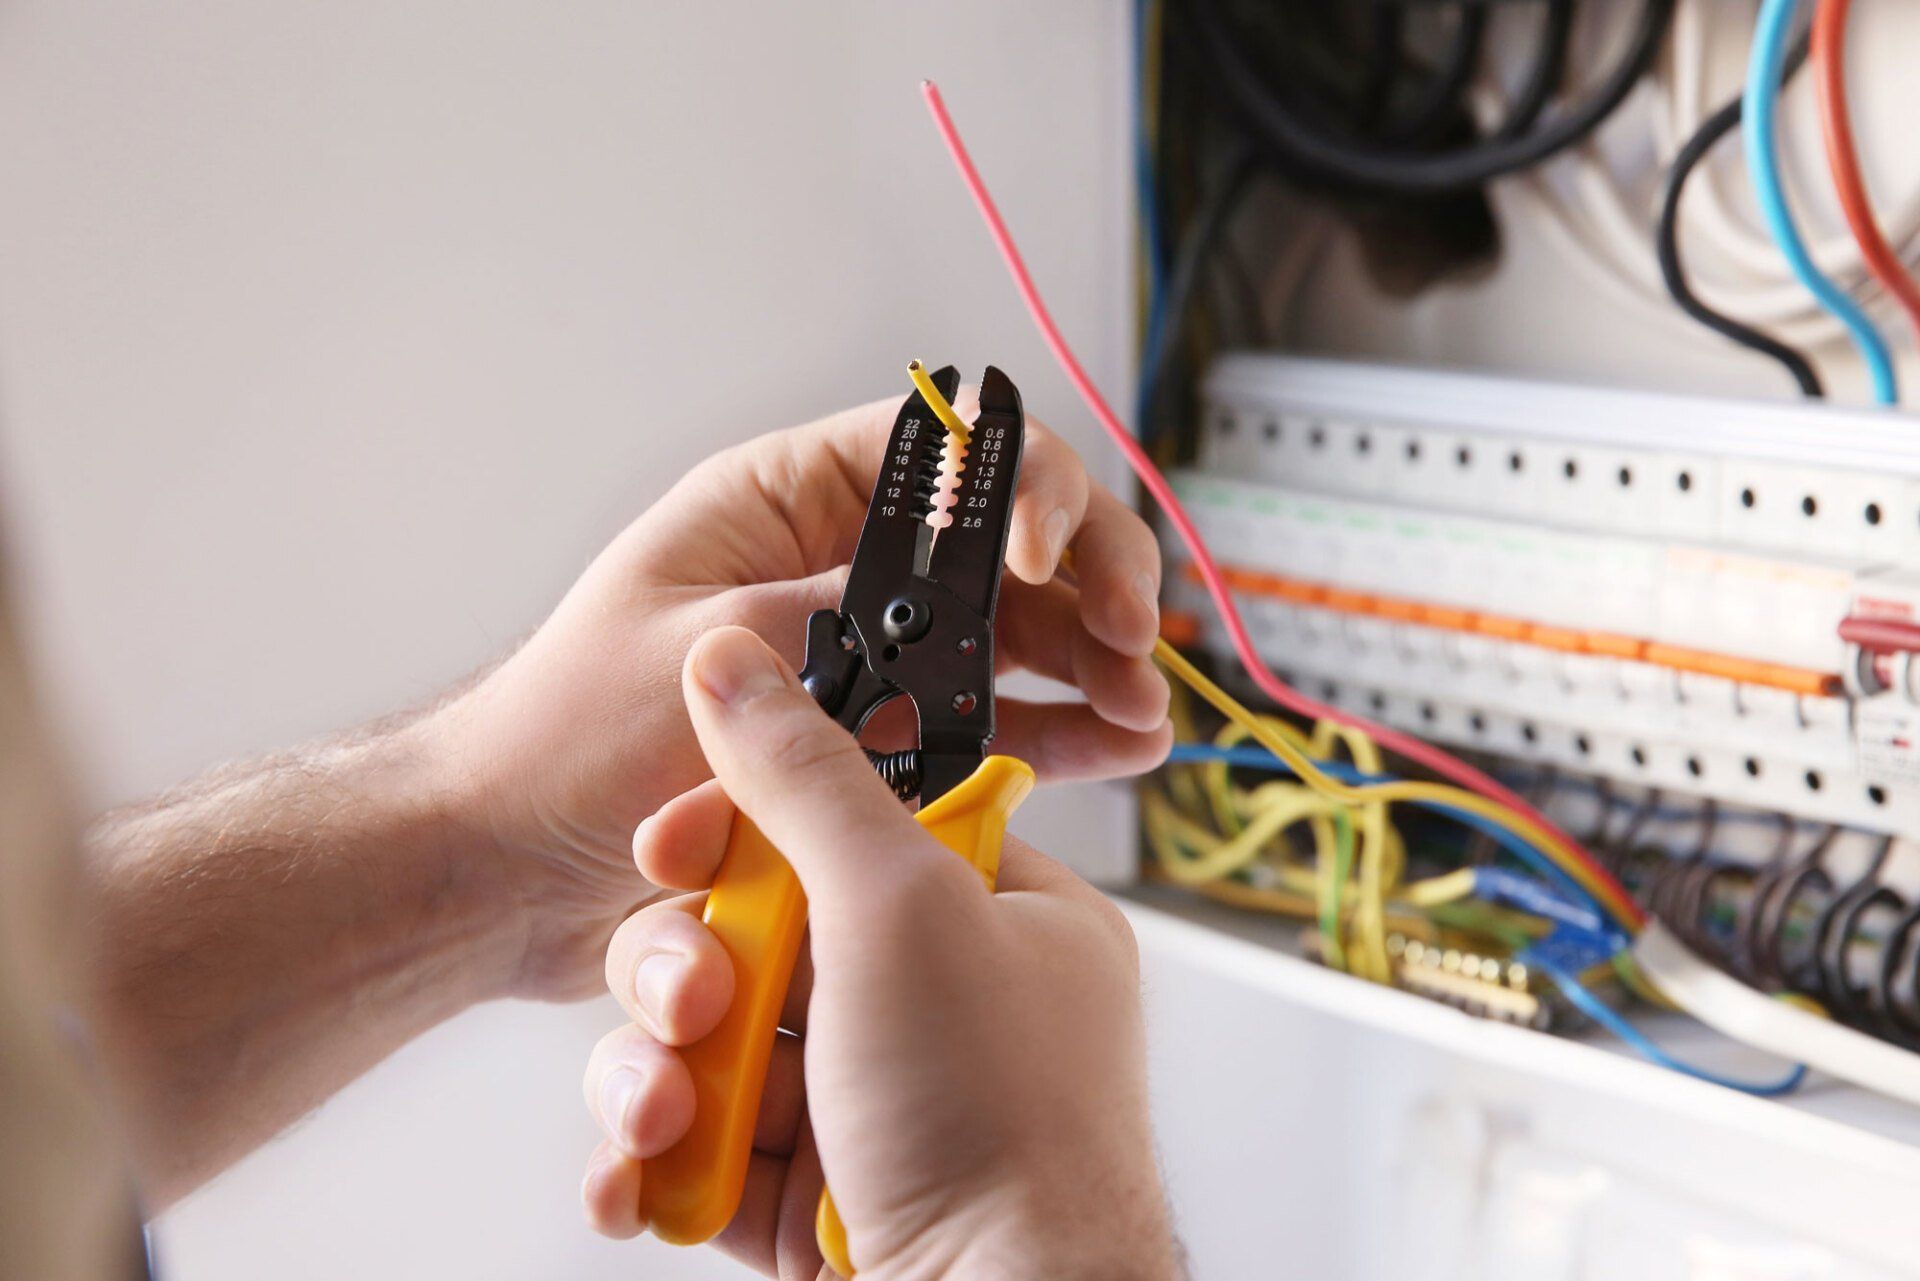 Électricien en train de dénuder un fil avec une pince